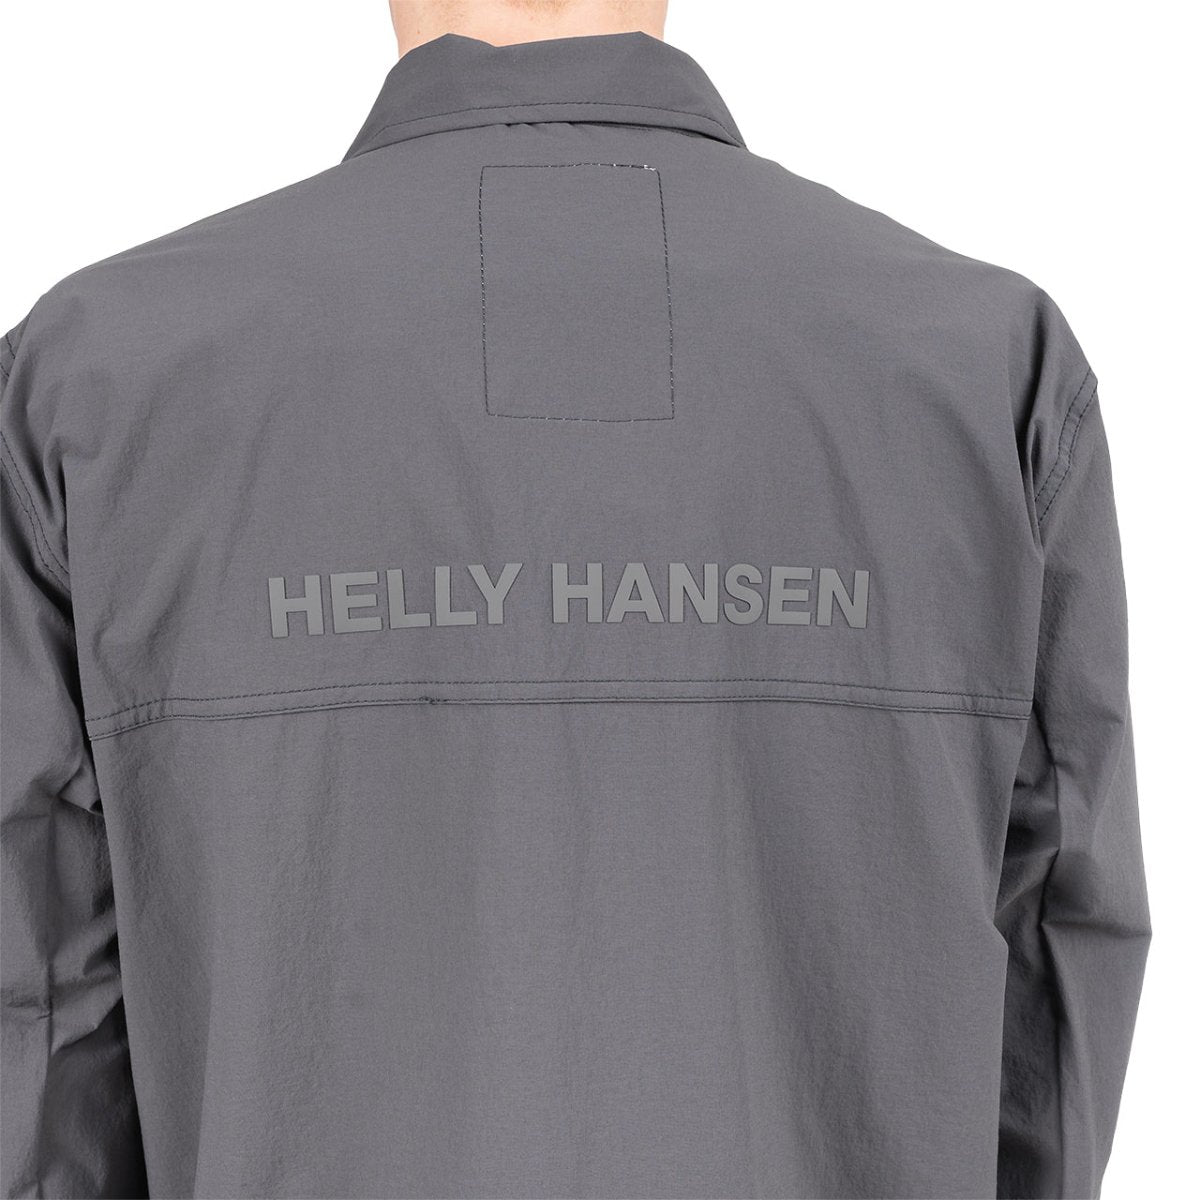 Helly Hansen Arc S21 Saline Jacket (Anthrazit)  - Allike Store